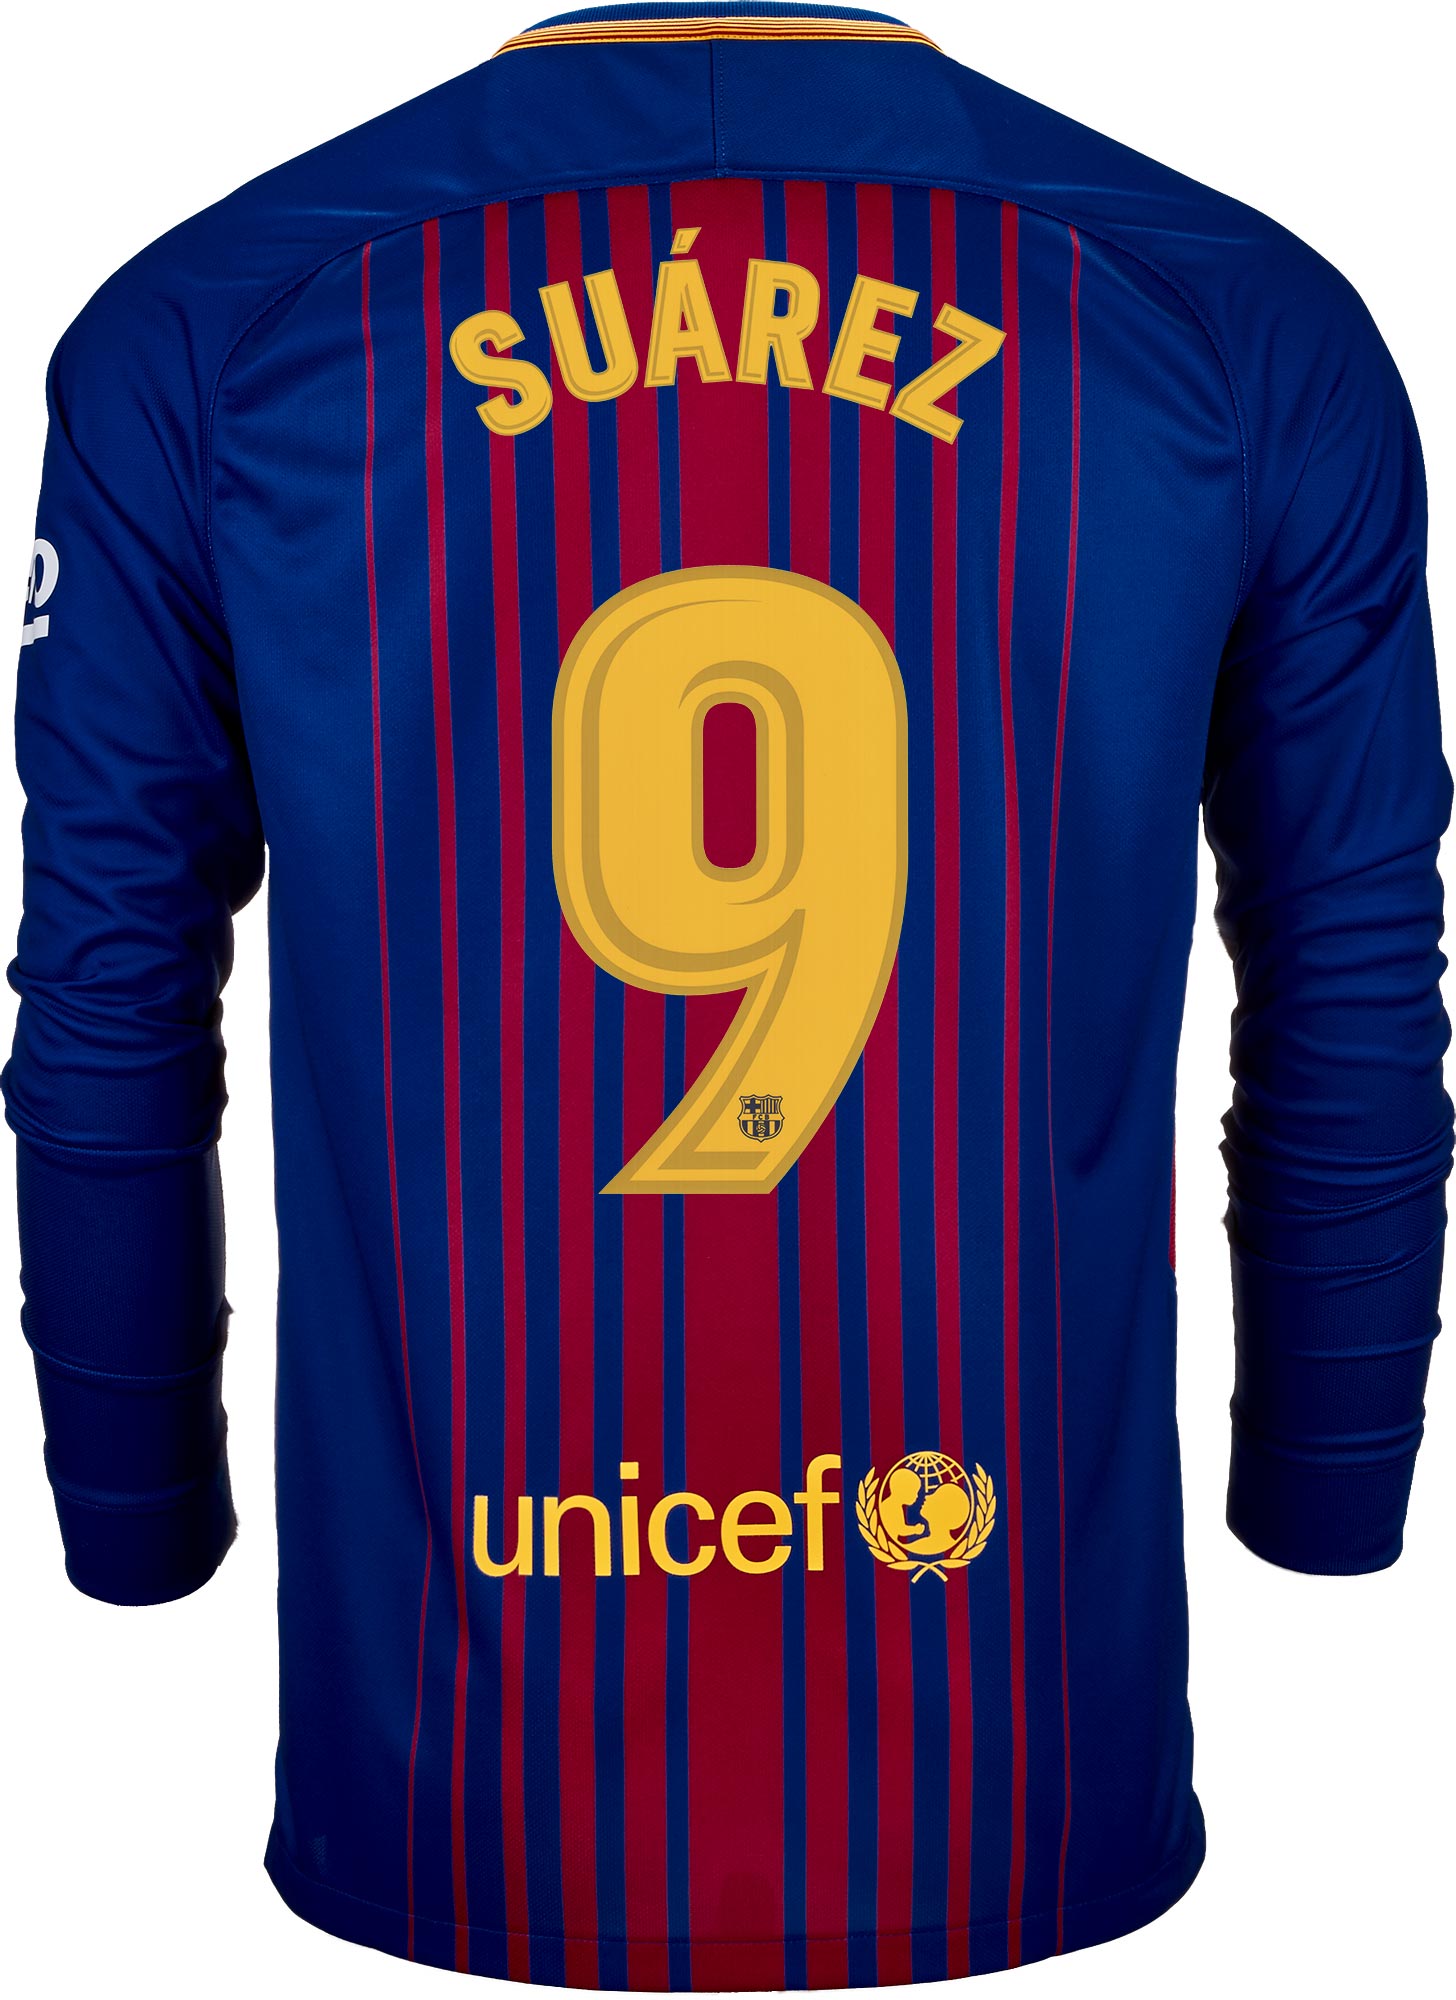 ingewikkeld Raad gezantschap Nike Luis Suarez Barcelona L/S Home Jersey 2017-18